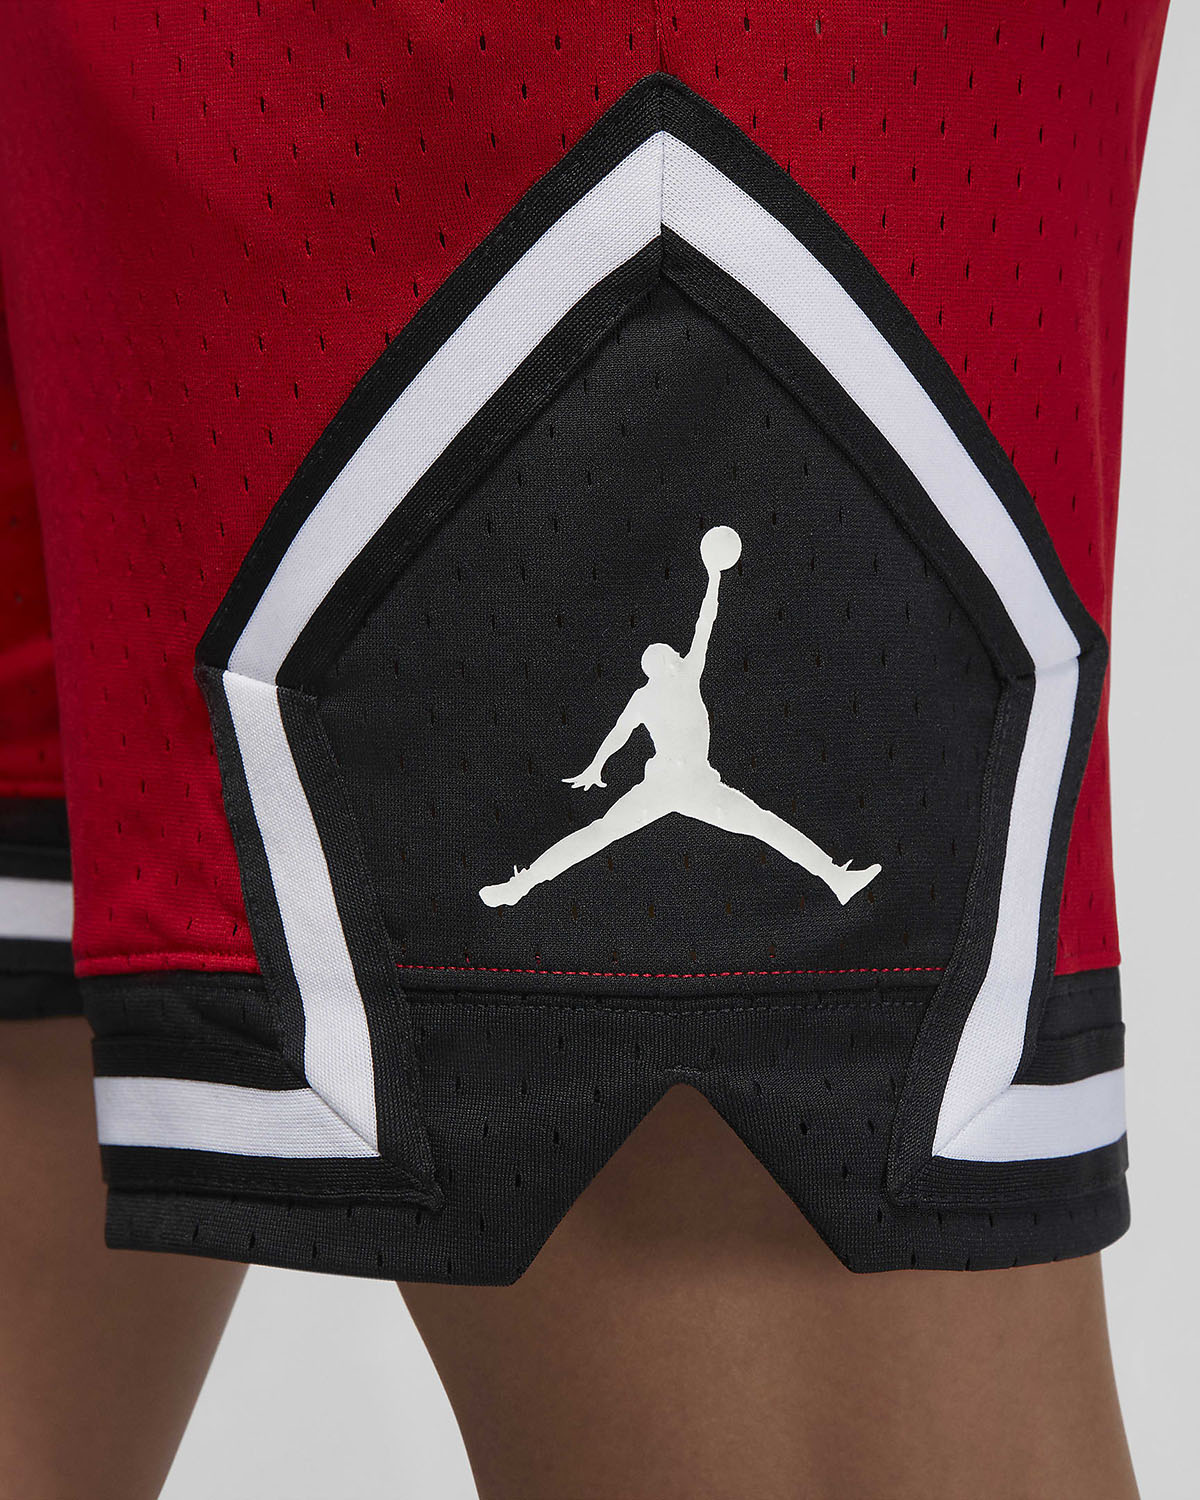 Jordan Woven Diamond Shorts Gym Red Black White